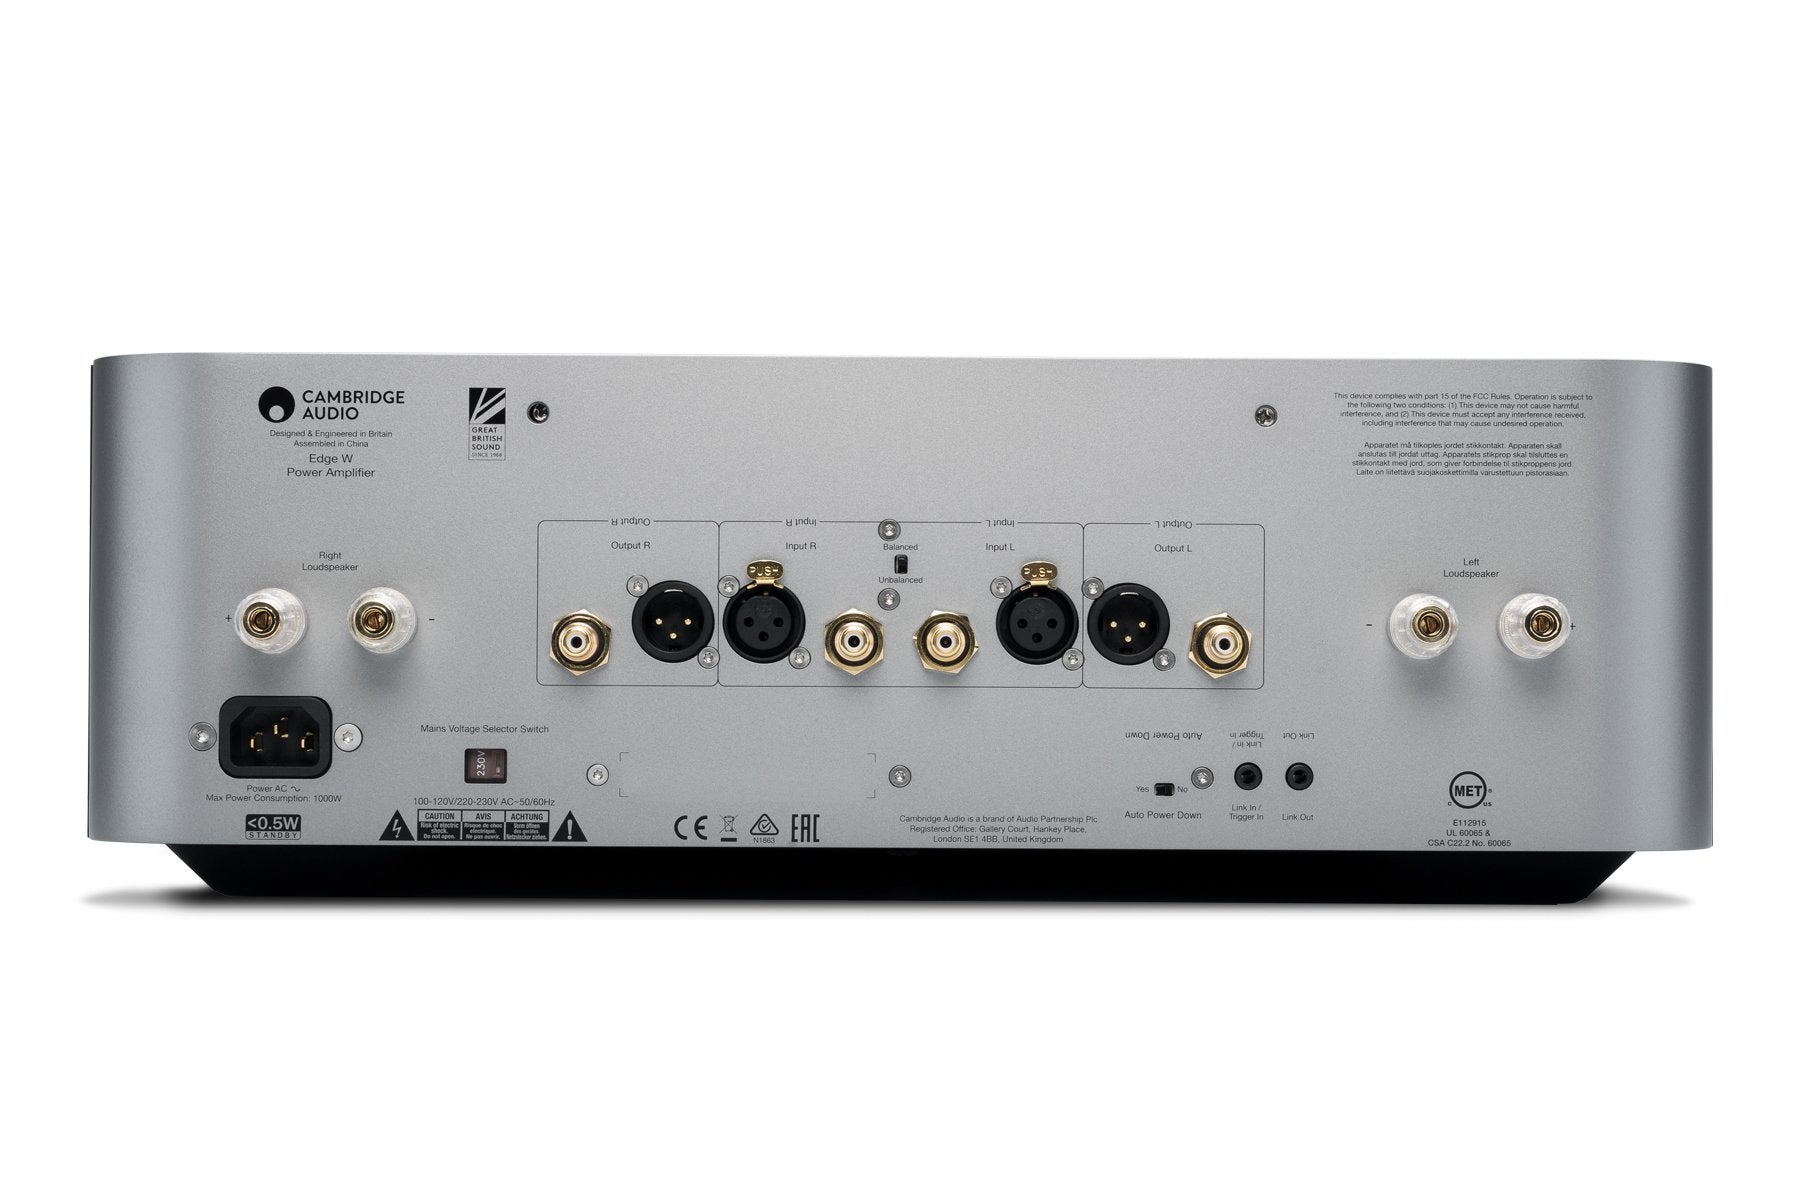 Cambridge Audio Edge W Power Amplifier